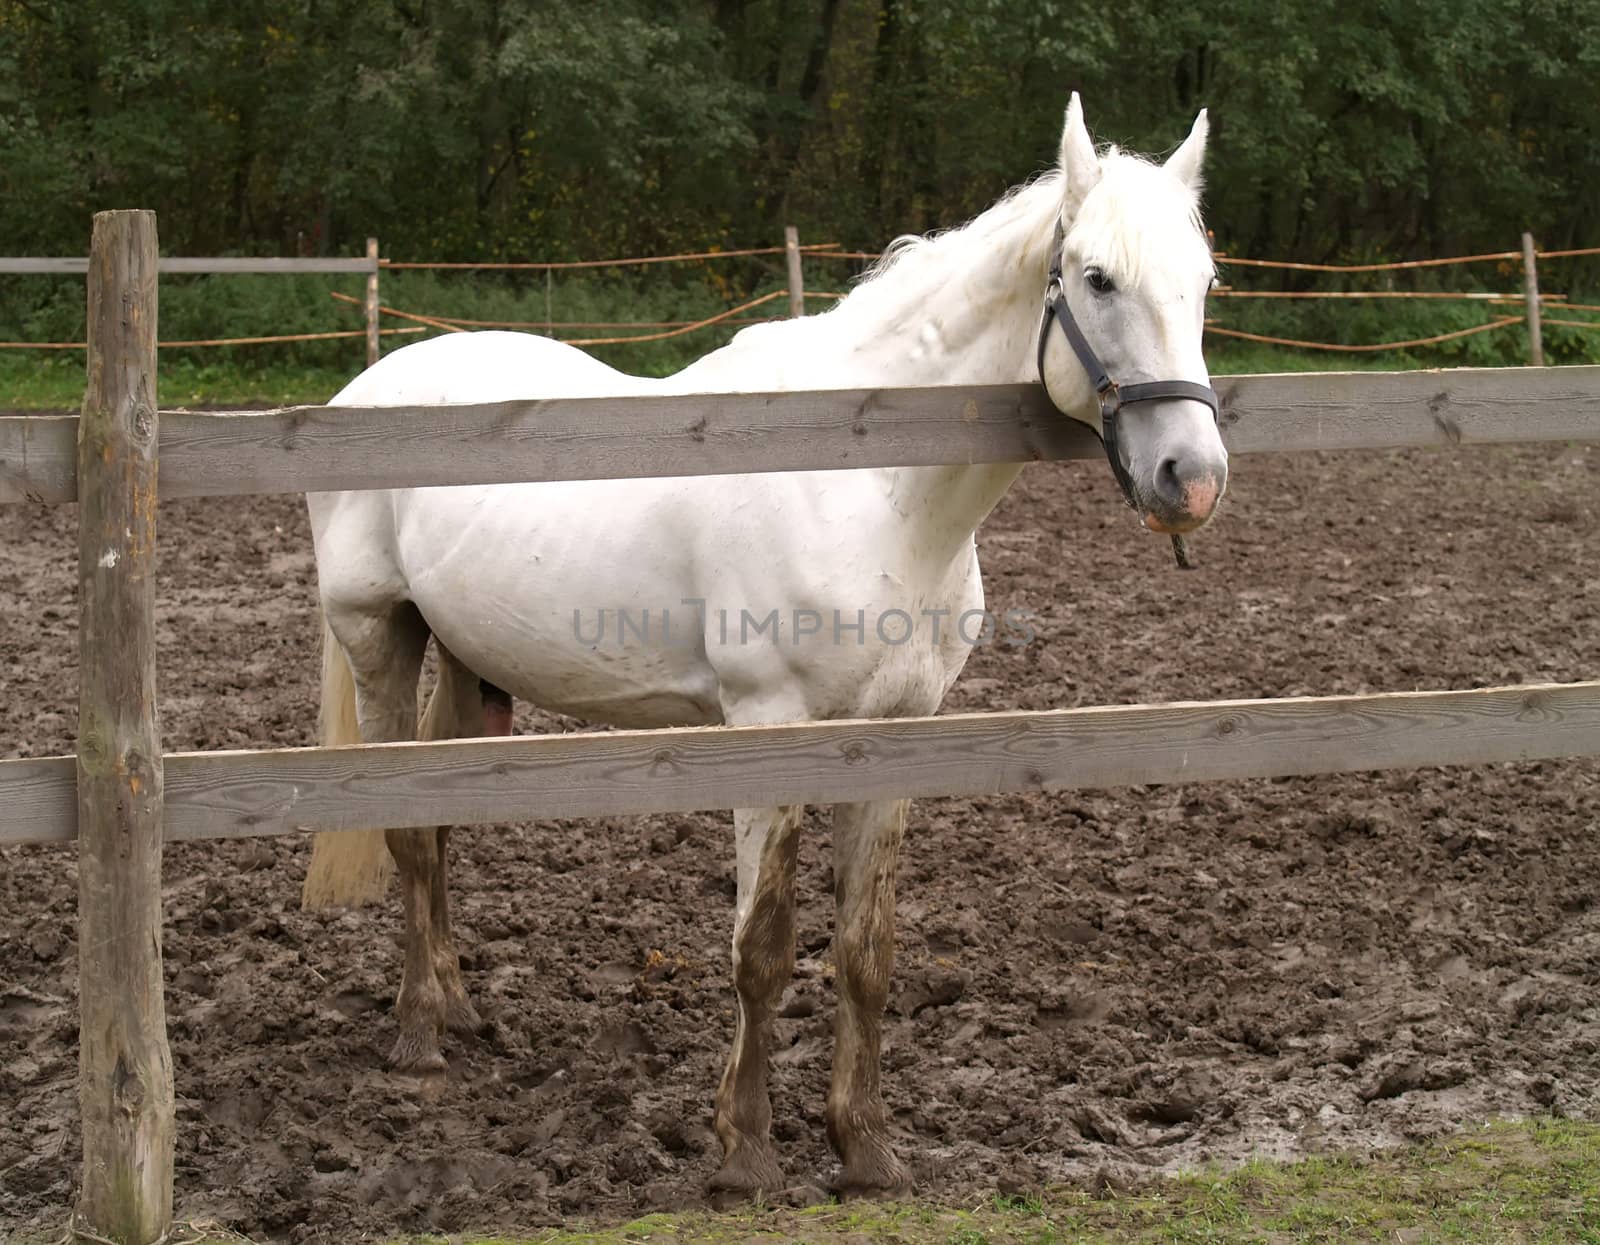 A stallion looks over a fence on a horse farm